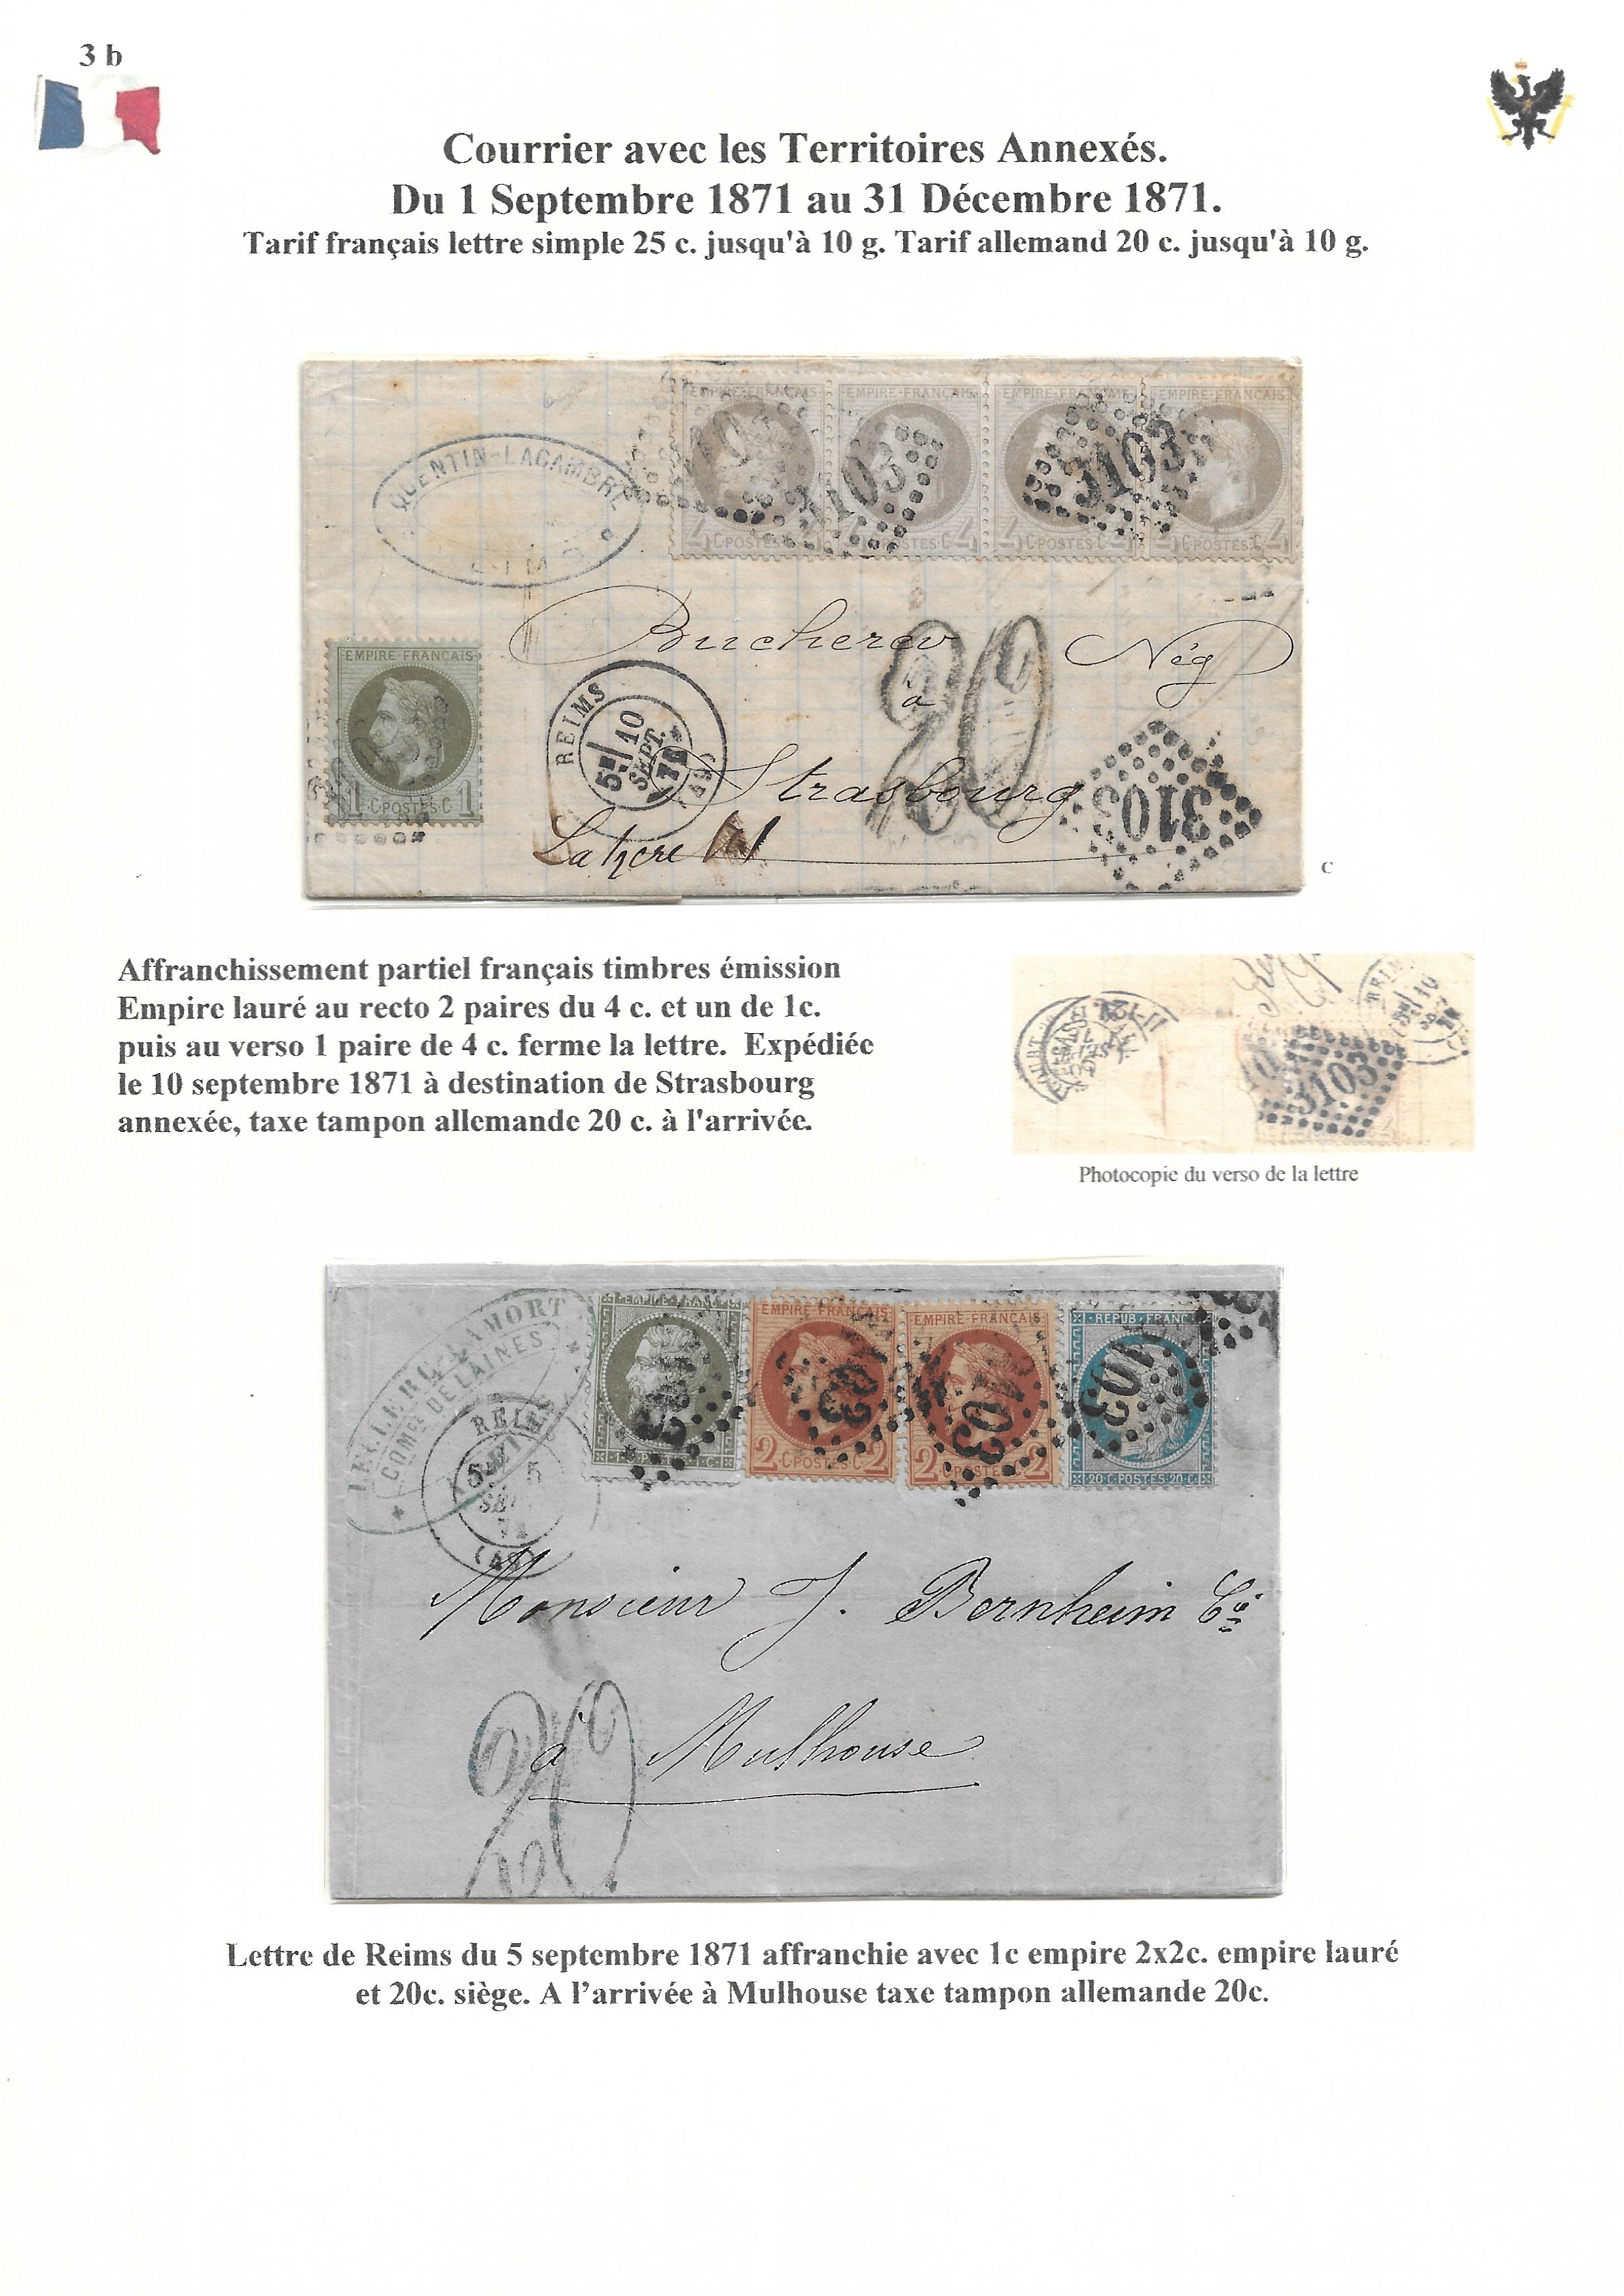 Occupation Prussienne dans la Marne 1870-1872 : Cons��quences sur les relations postales p. 35